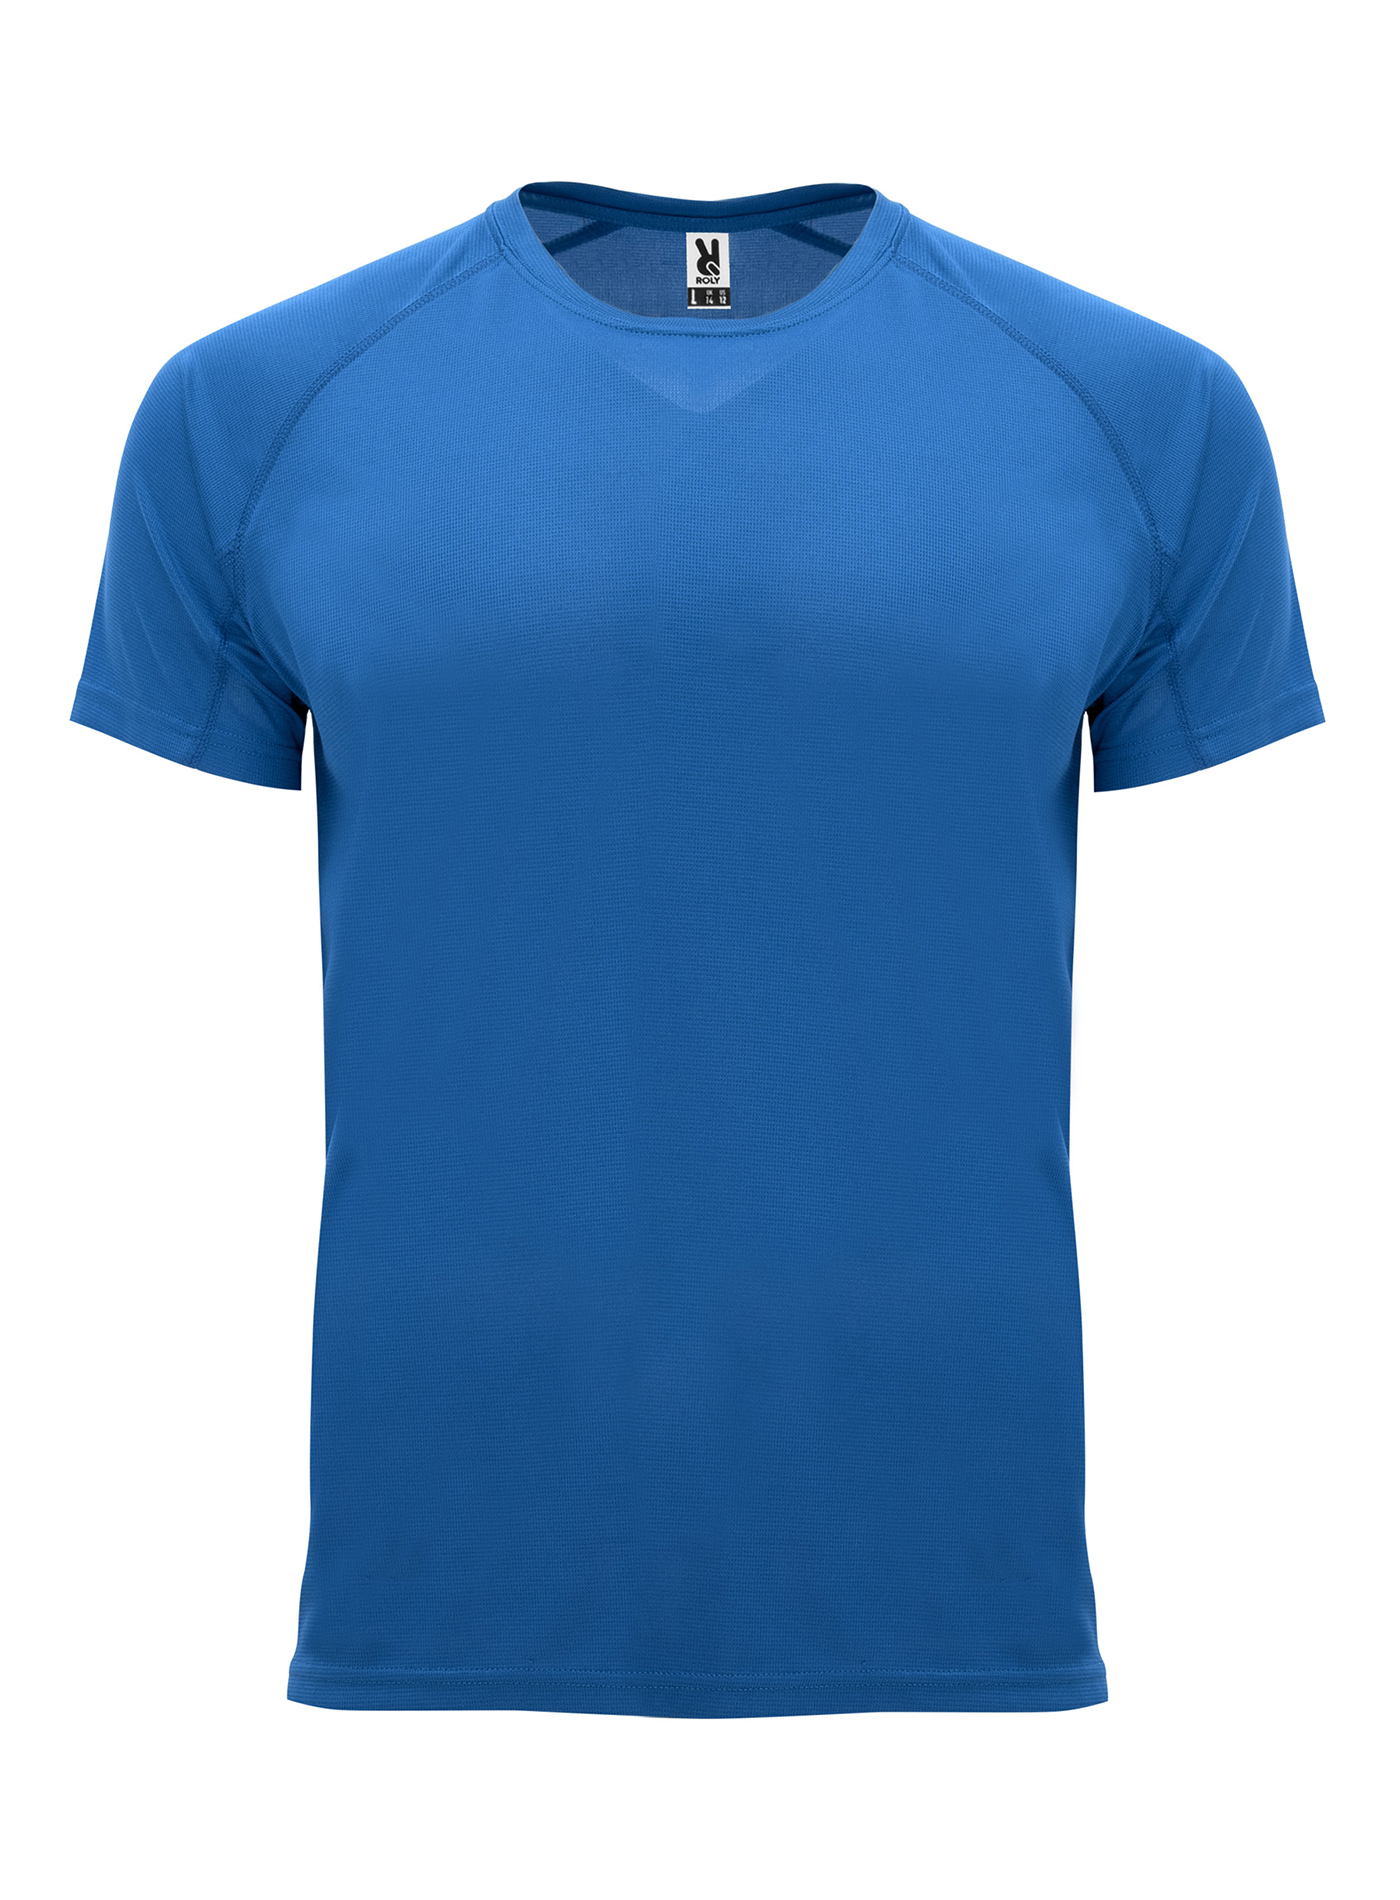 Pánské sportovní tričko Roly Bahrain - královská modrá XL